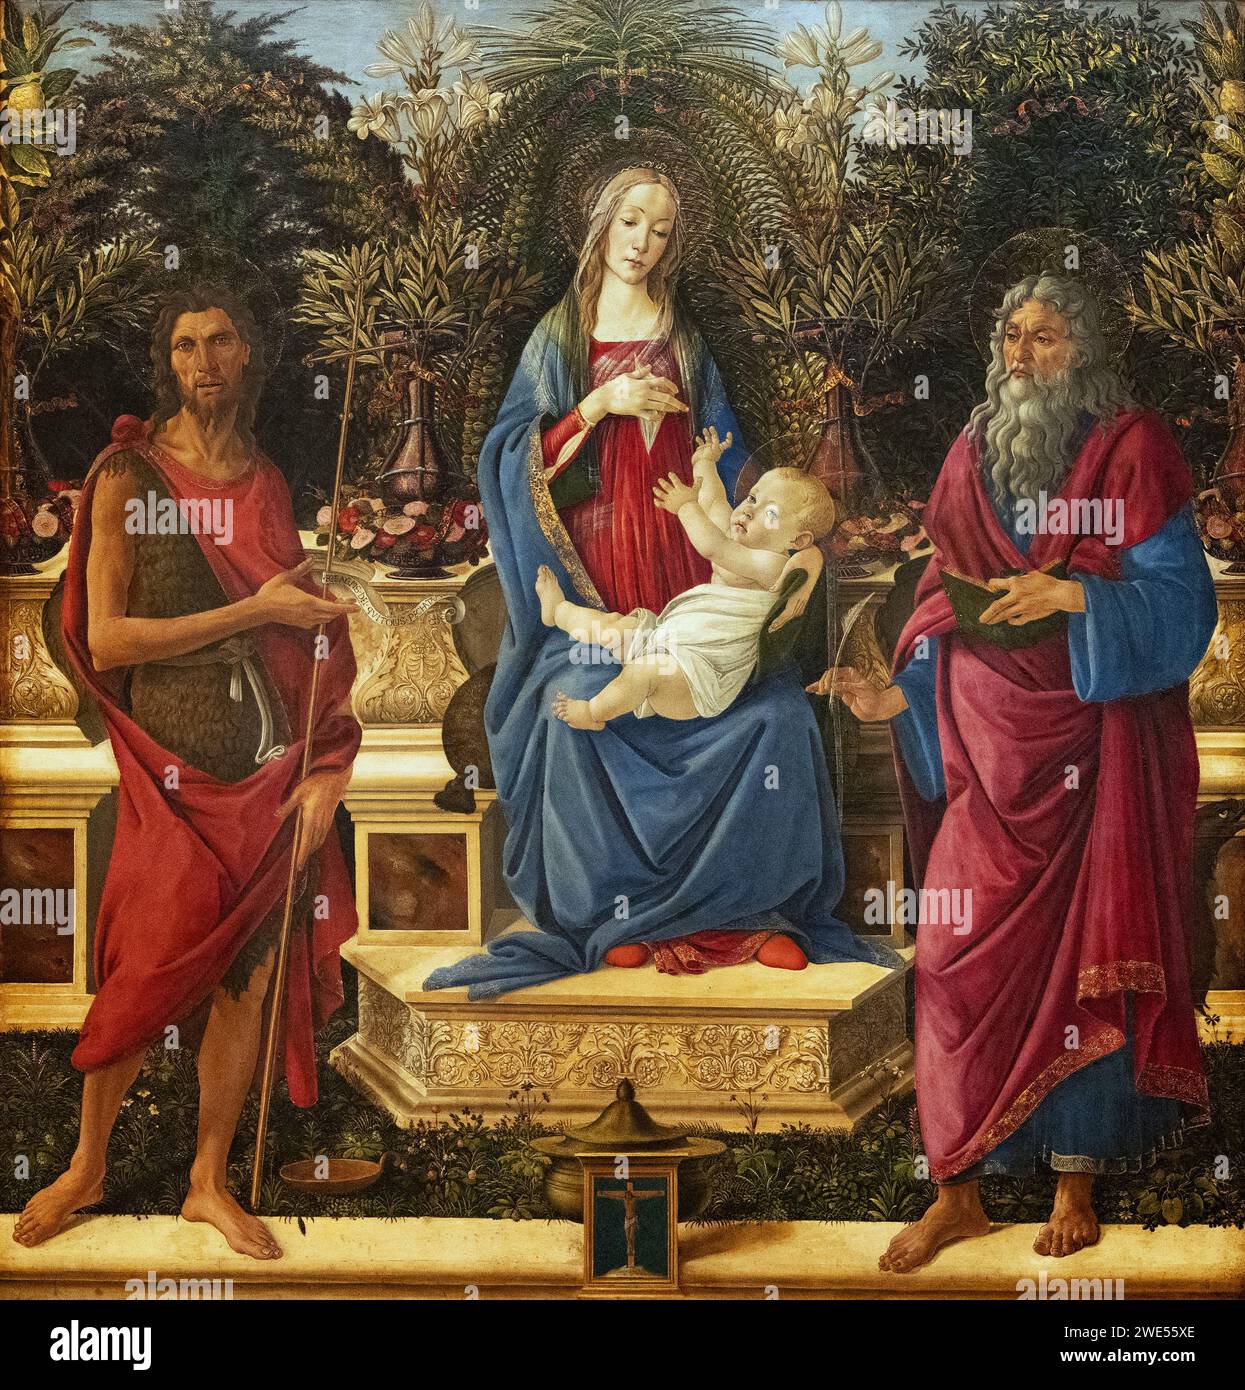 Dipinto di Sandro Botticelli; "Maria in trono con il bambino e i due Giovanni", originario dell'altare Bardi, 1484 circa; arte rinascimentale italiana. Foto Stock